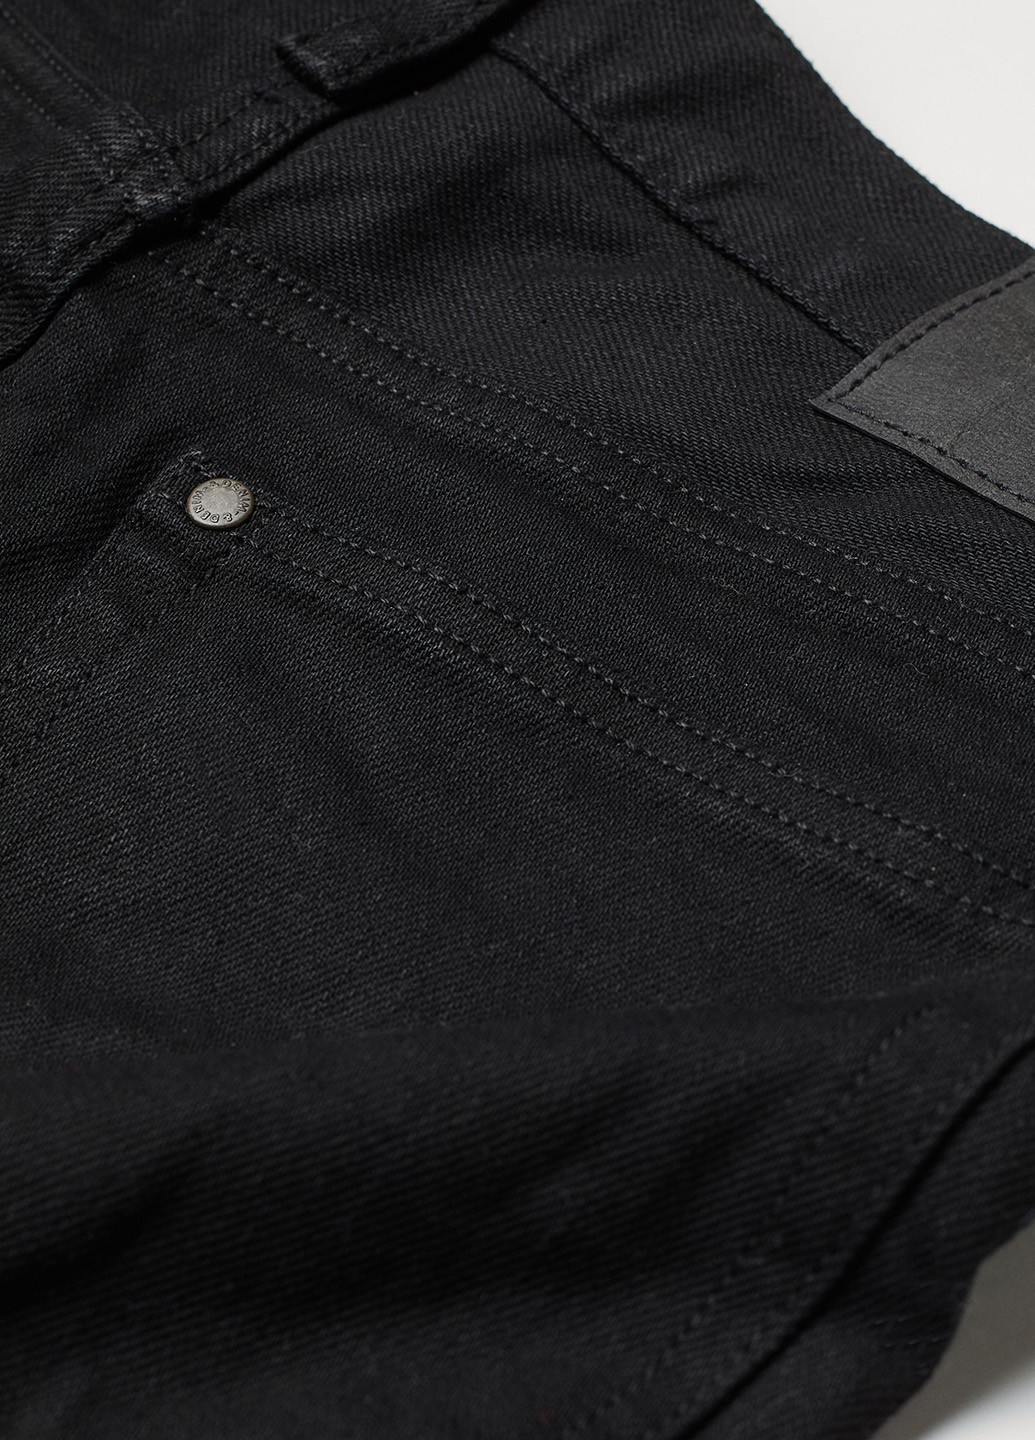 Черные демисезонные регюлар фит джинсы H&M